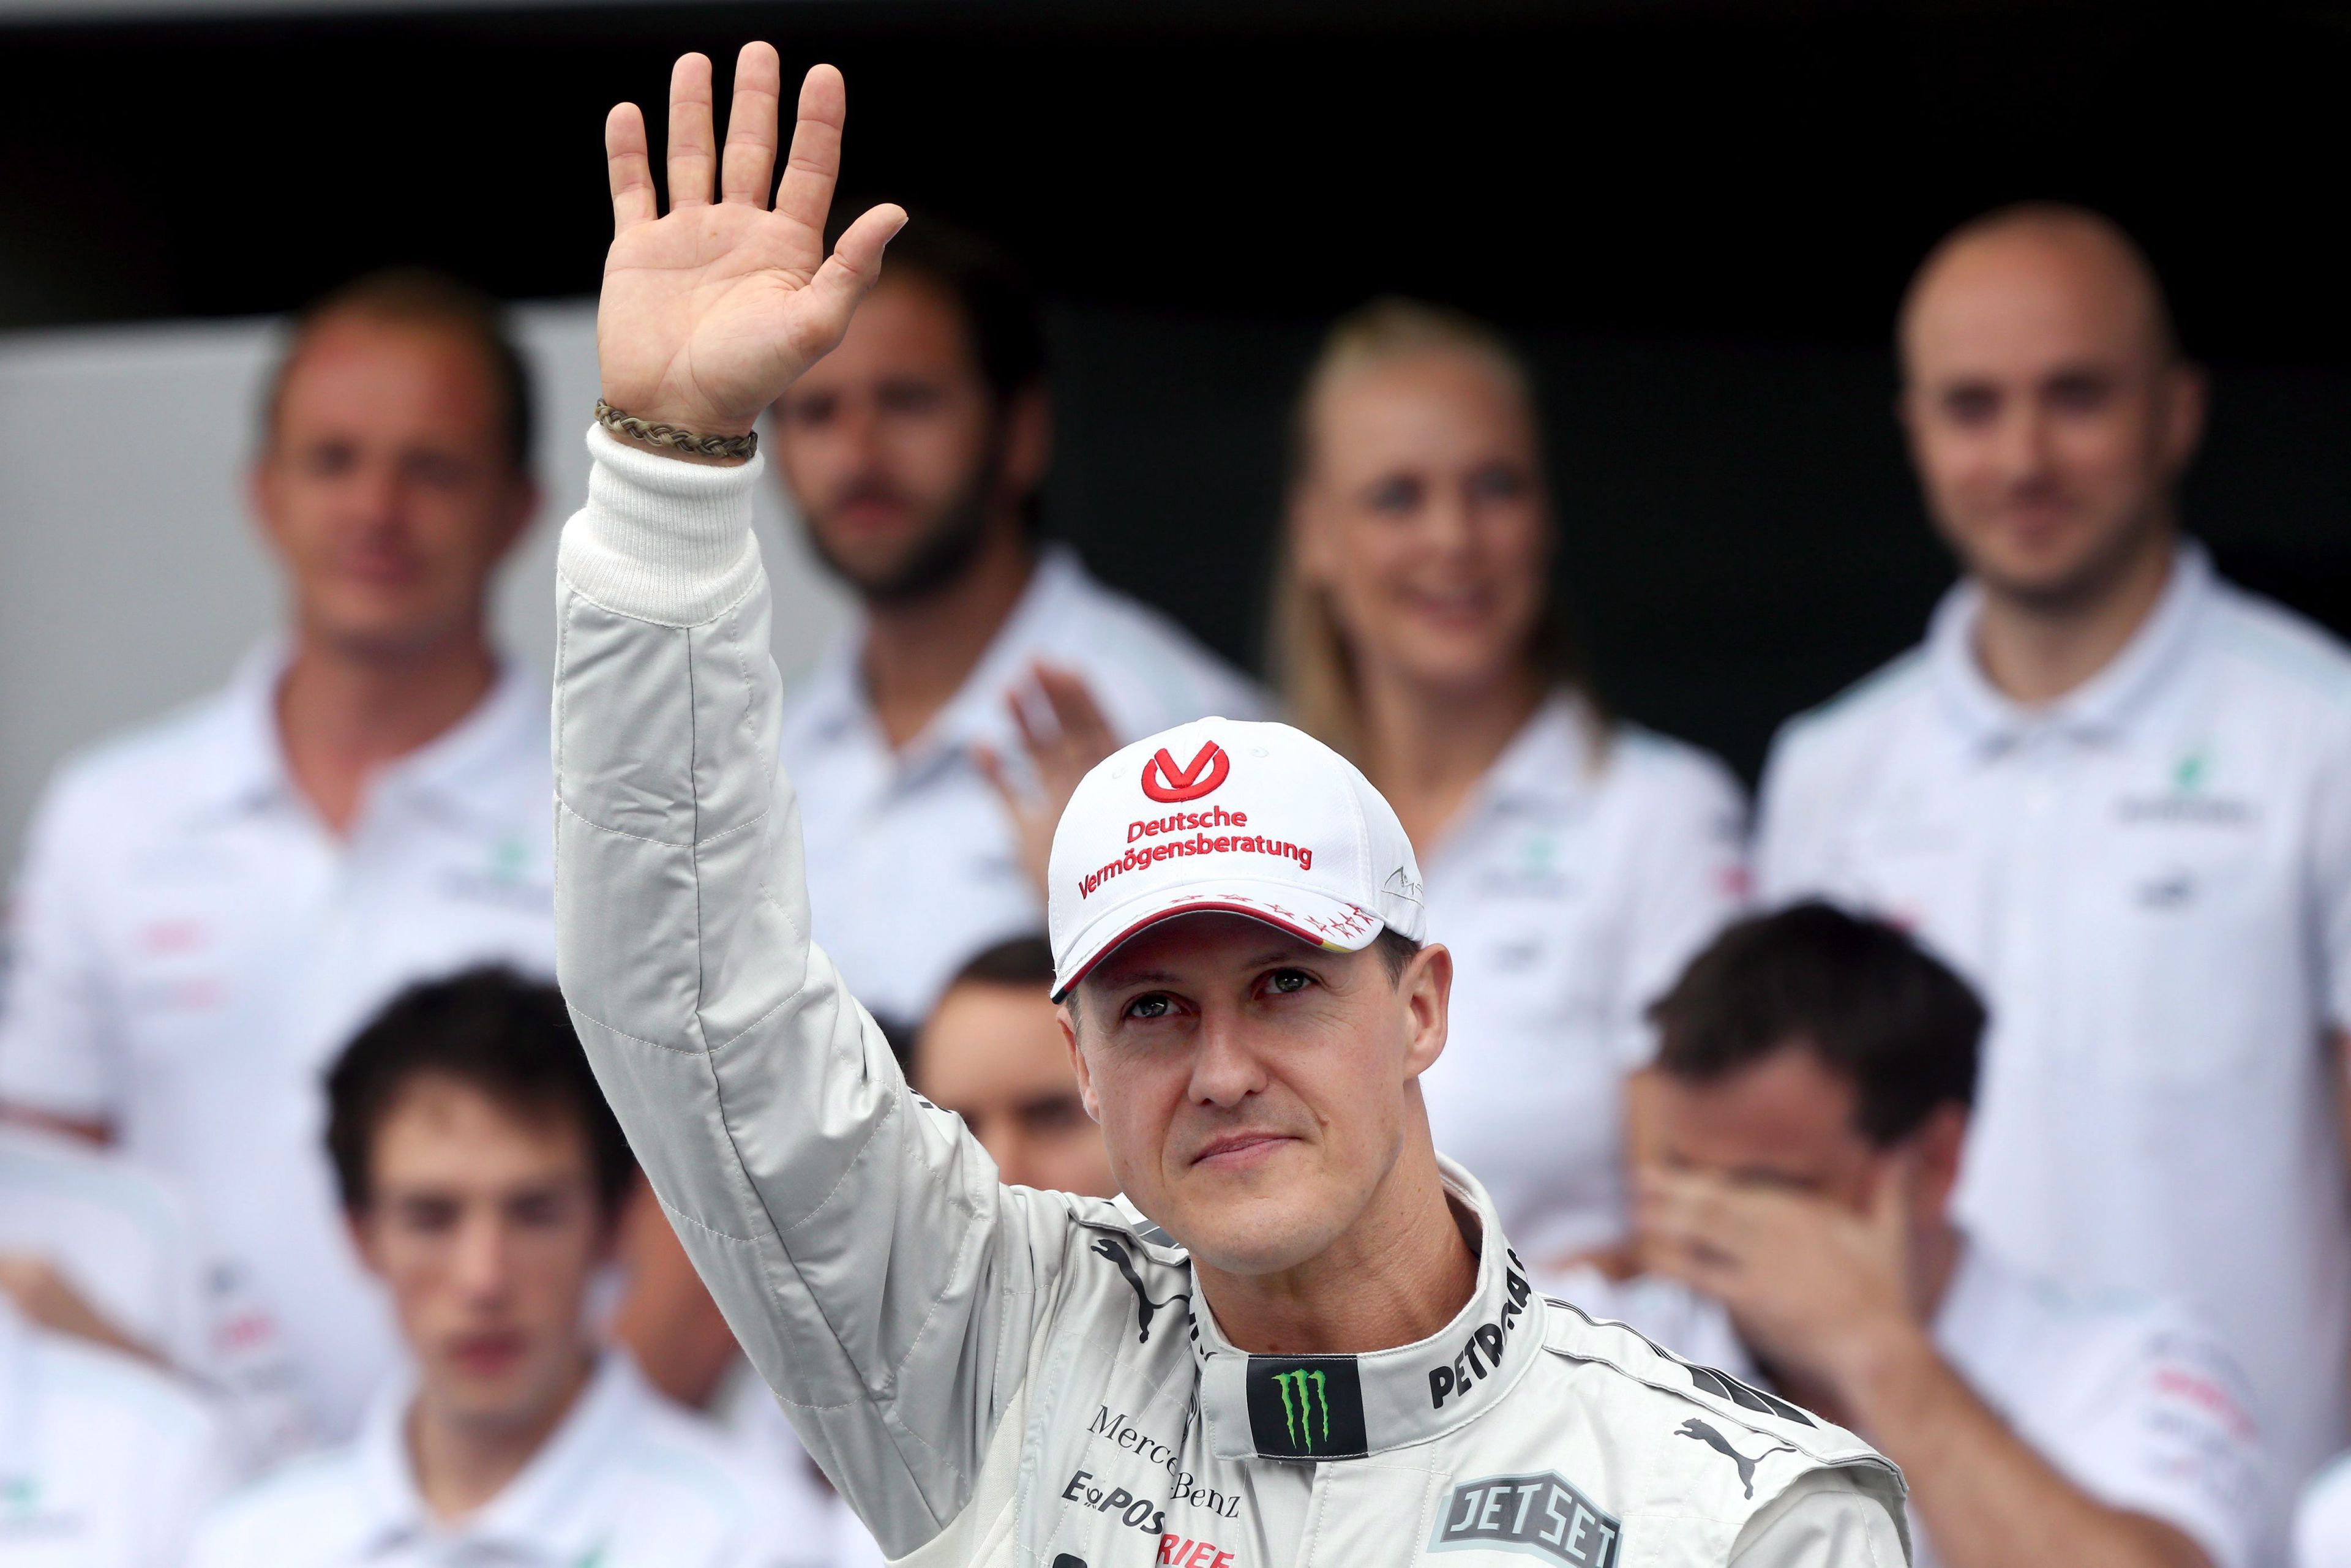 Hamarosan érkezik a Schumacher életéről szóló dokumentumfilm /Fotó: MTI/EPA/Jens Büttner